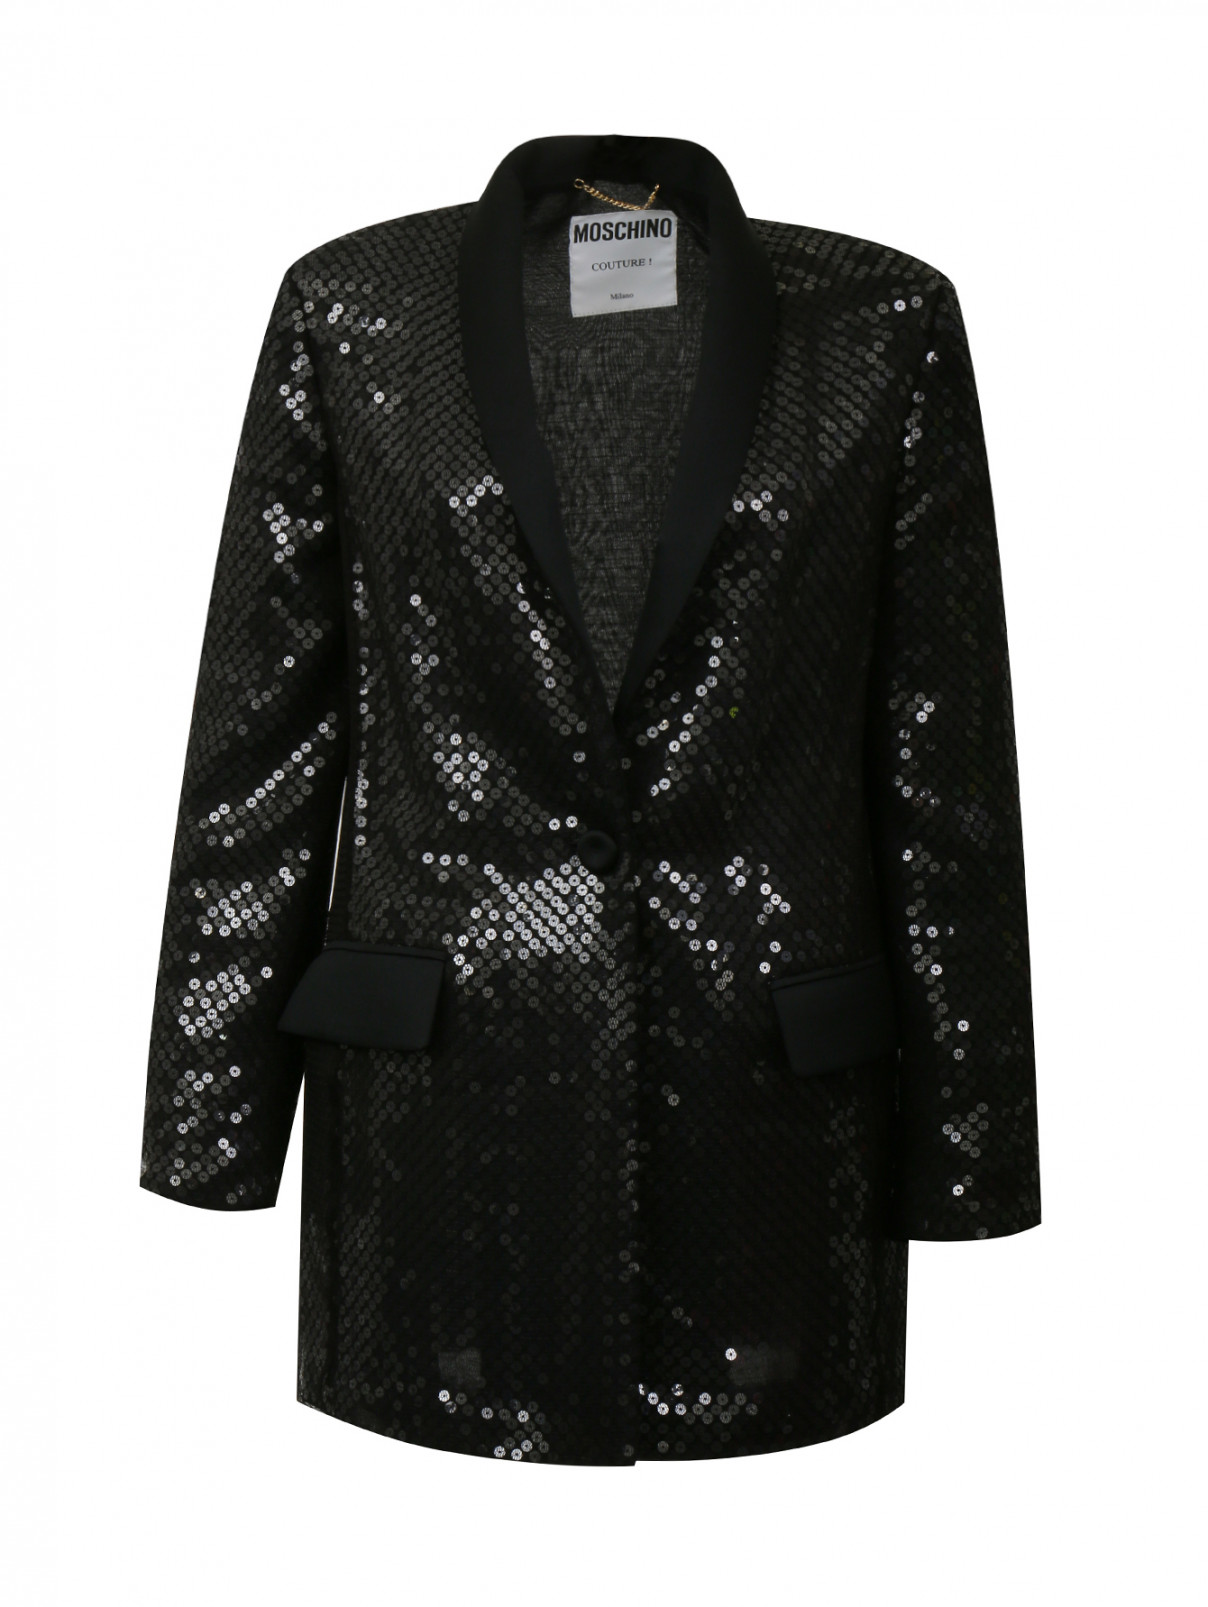 Жакет из шелка свободного кроя декорированный пайетками Moschino Couture  –  Общий вид  – Цвет:  Черный